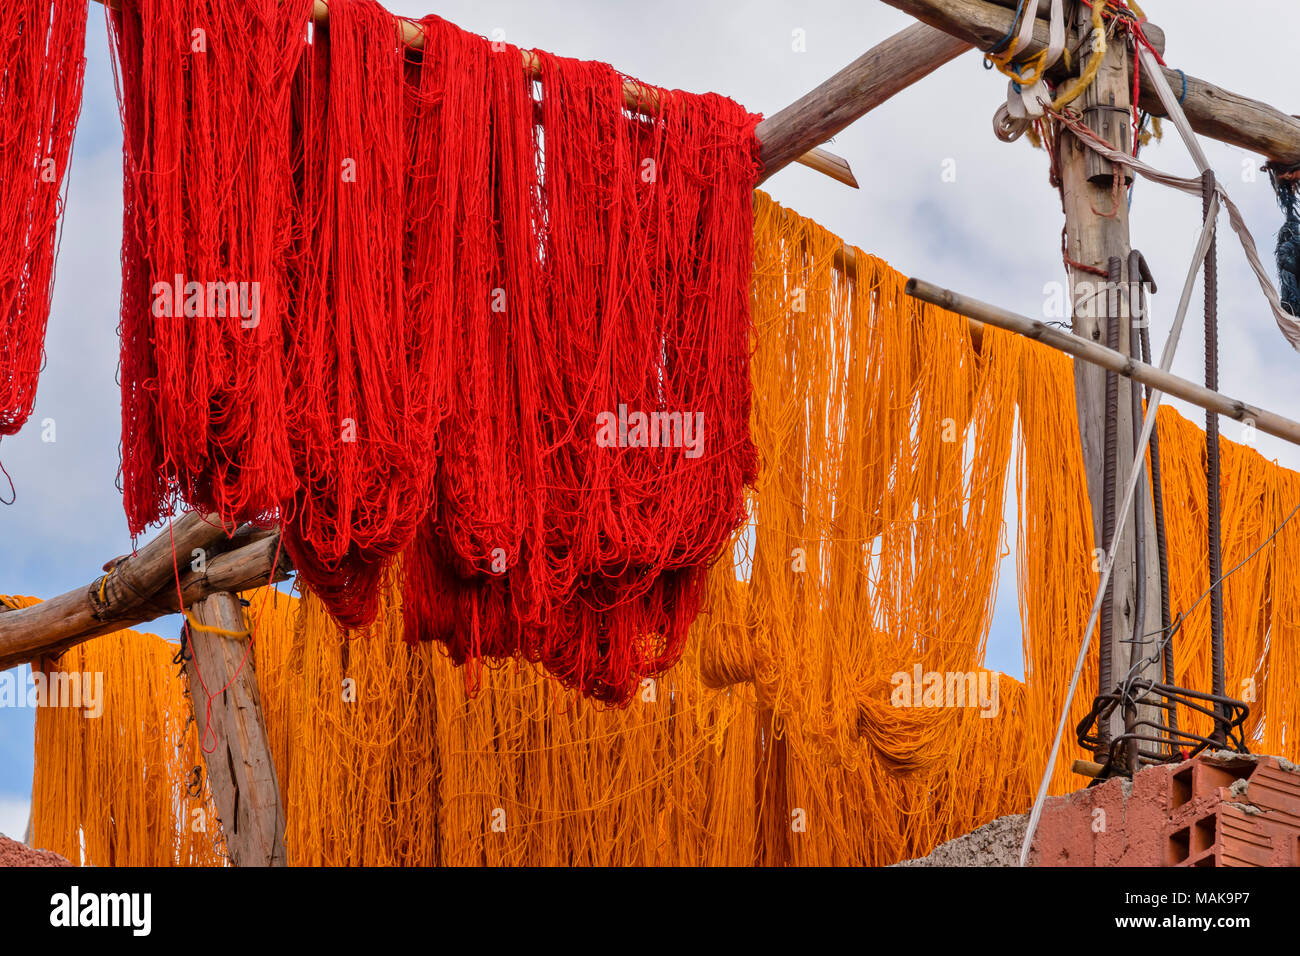 Marruecos Marrakech Medina Jemaa EL Fna zoco madejas de lana de lana teñidos de rojo y amarillo colgando de postes y secado al sol Foto de stock